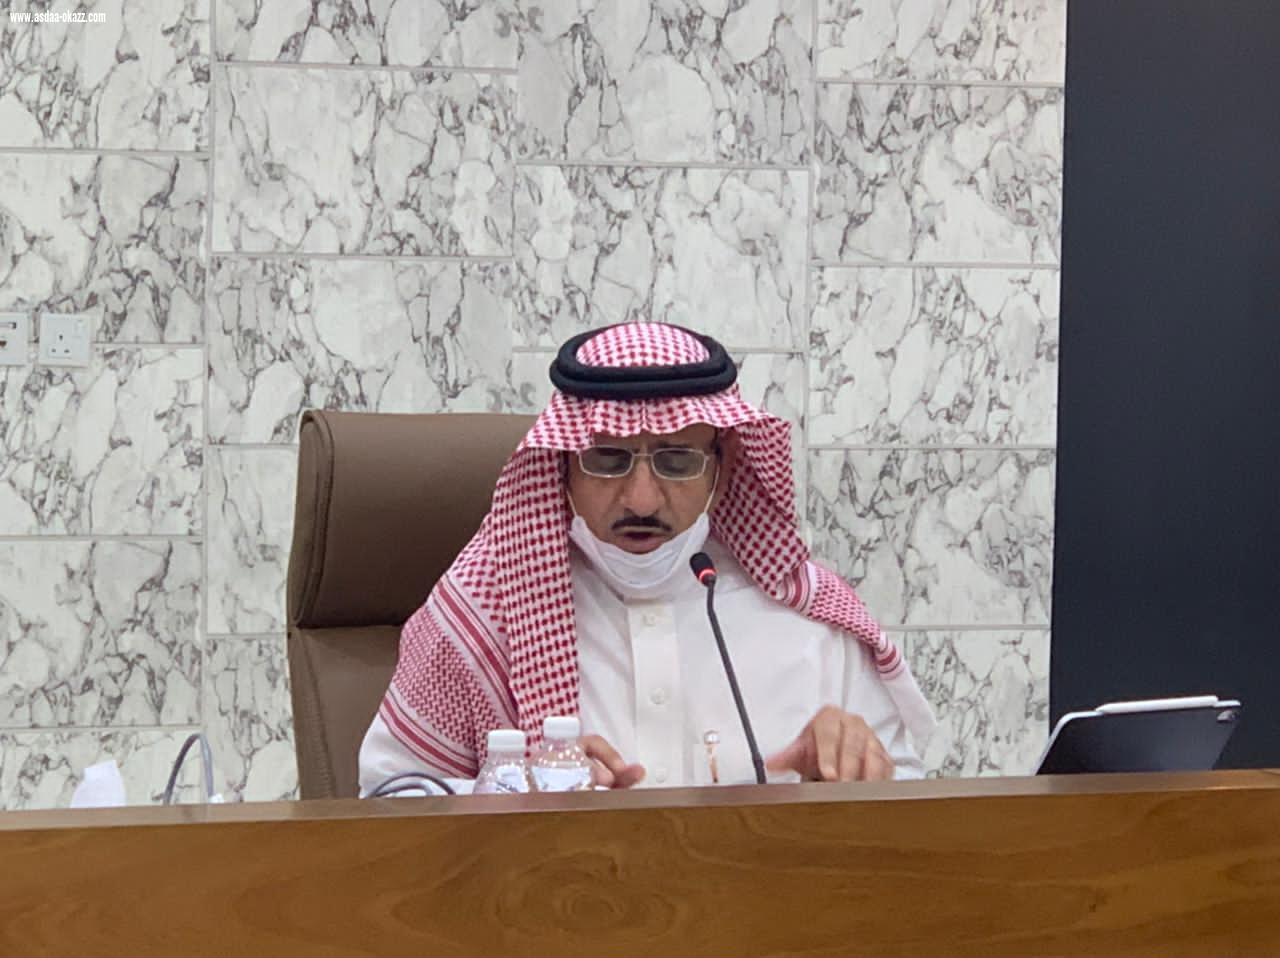 معالي رئيس جامعة الباحة يترأس الاجتماع الأول للجنة العمل على مبادرة تحول الجامعة إلى نظام الفصول الدراسية الثلاثة